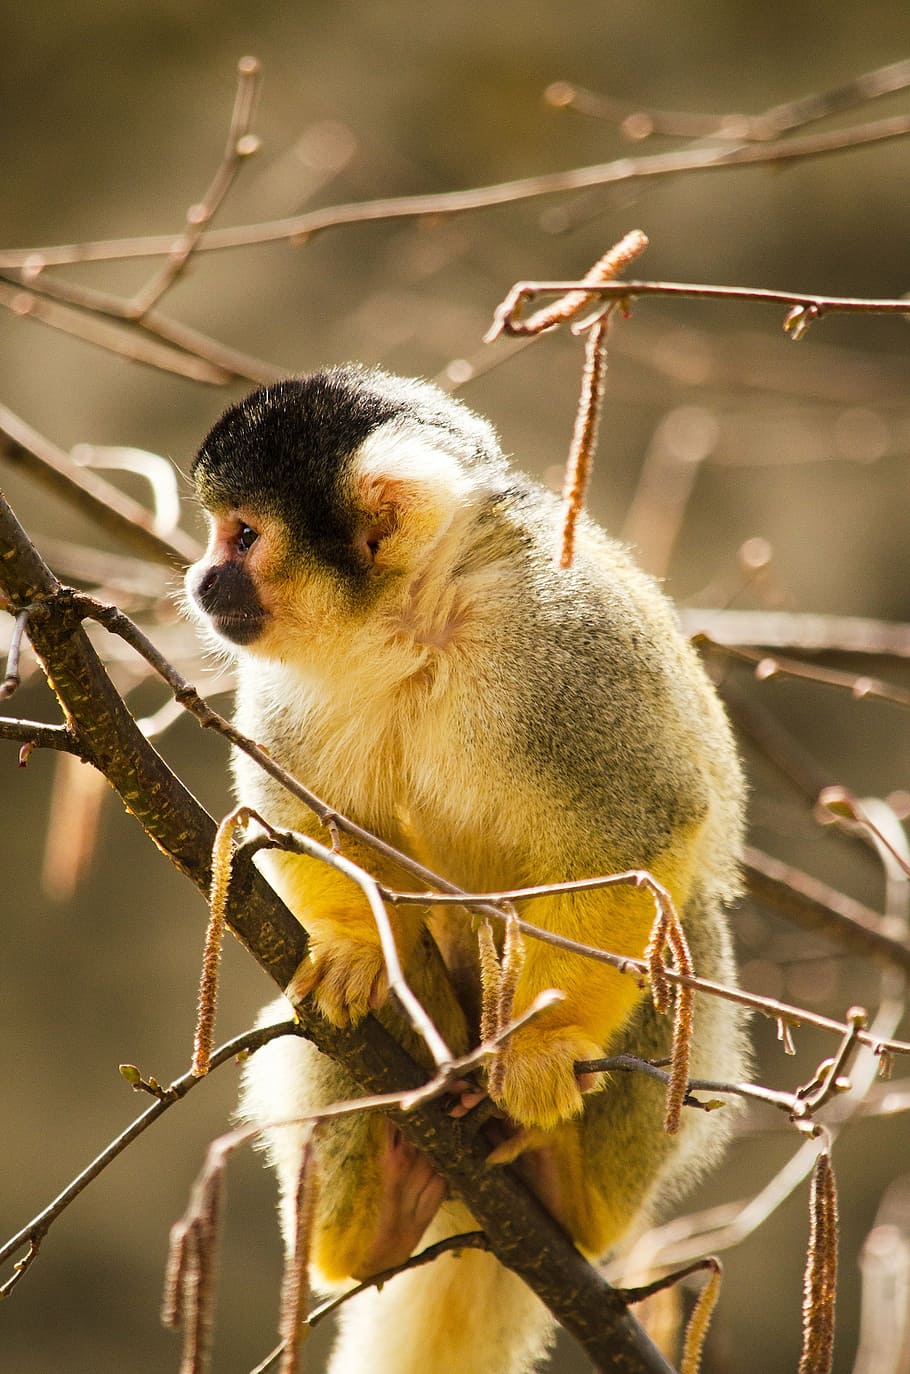 squirrel monkey, primate, zoo, äffchen, animal themes, animal wildlife